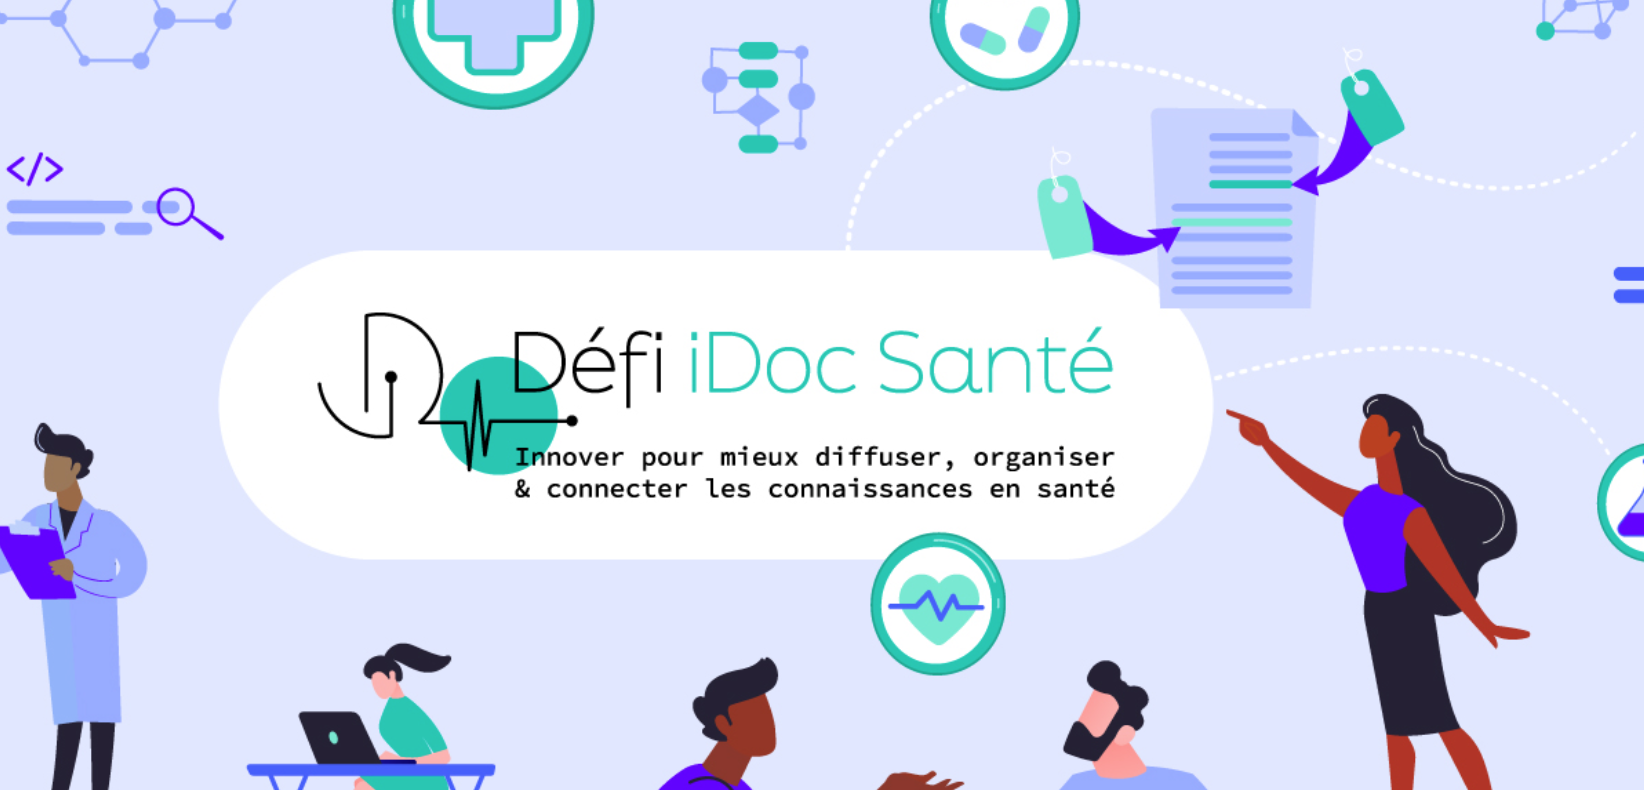 La HAS lance le Défi iDoc Santé, un concours pour mieux diffuser, organiser et connecter les connaissances en santé